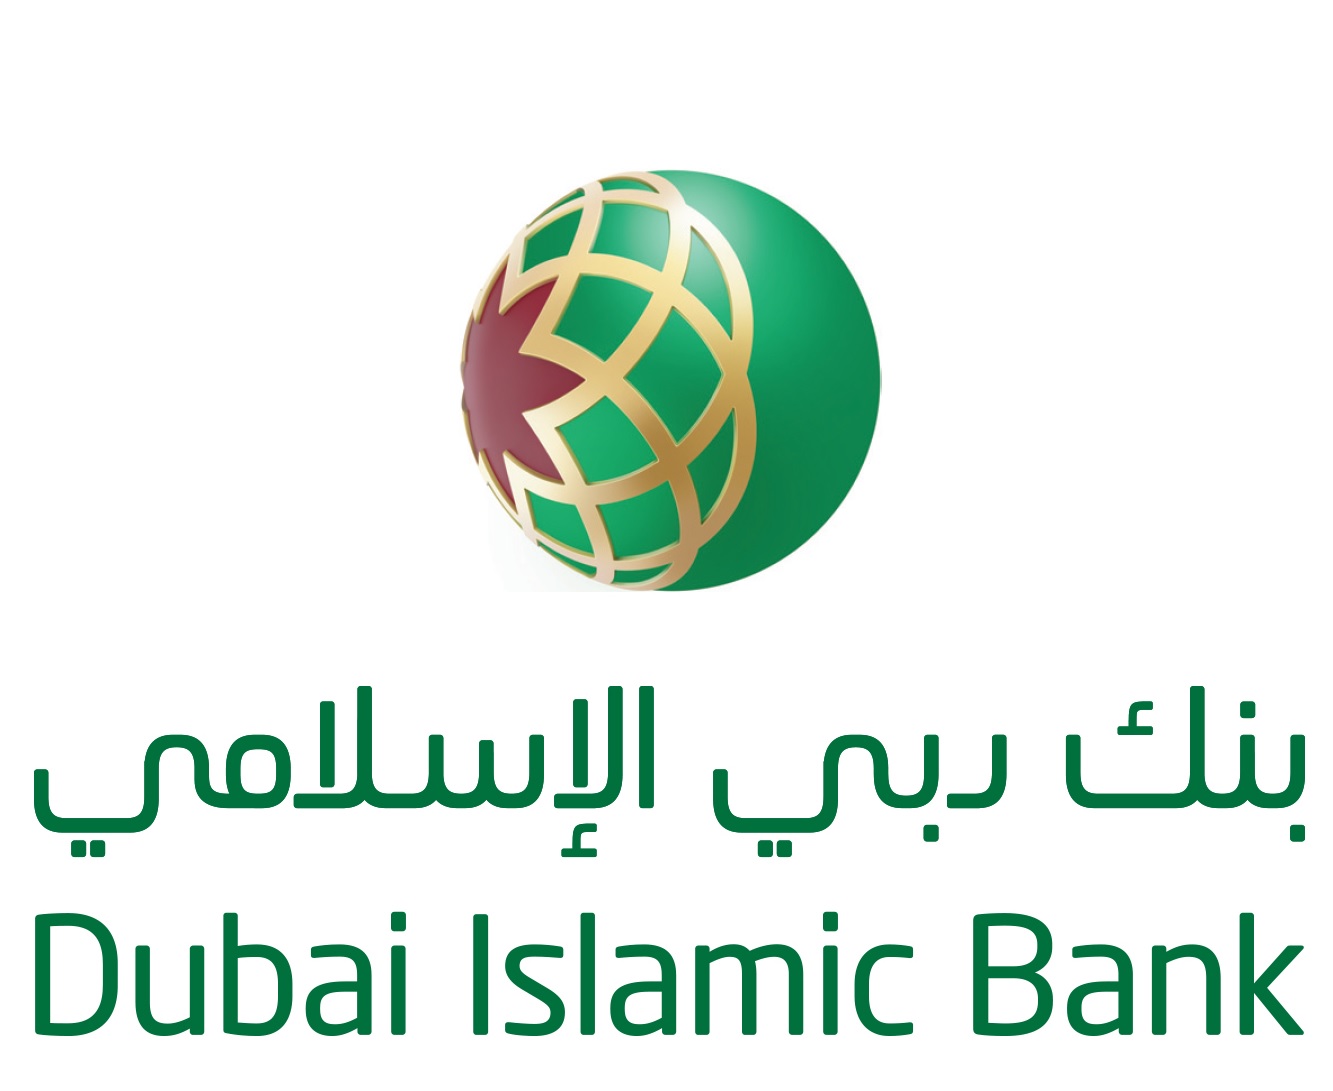 Dubai Islamic Bank Brand Logo